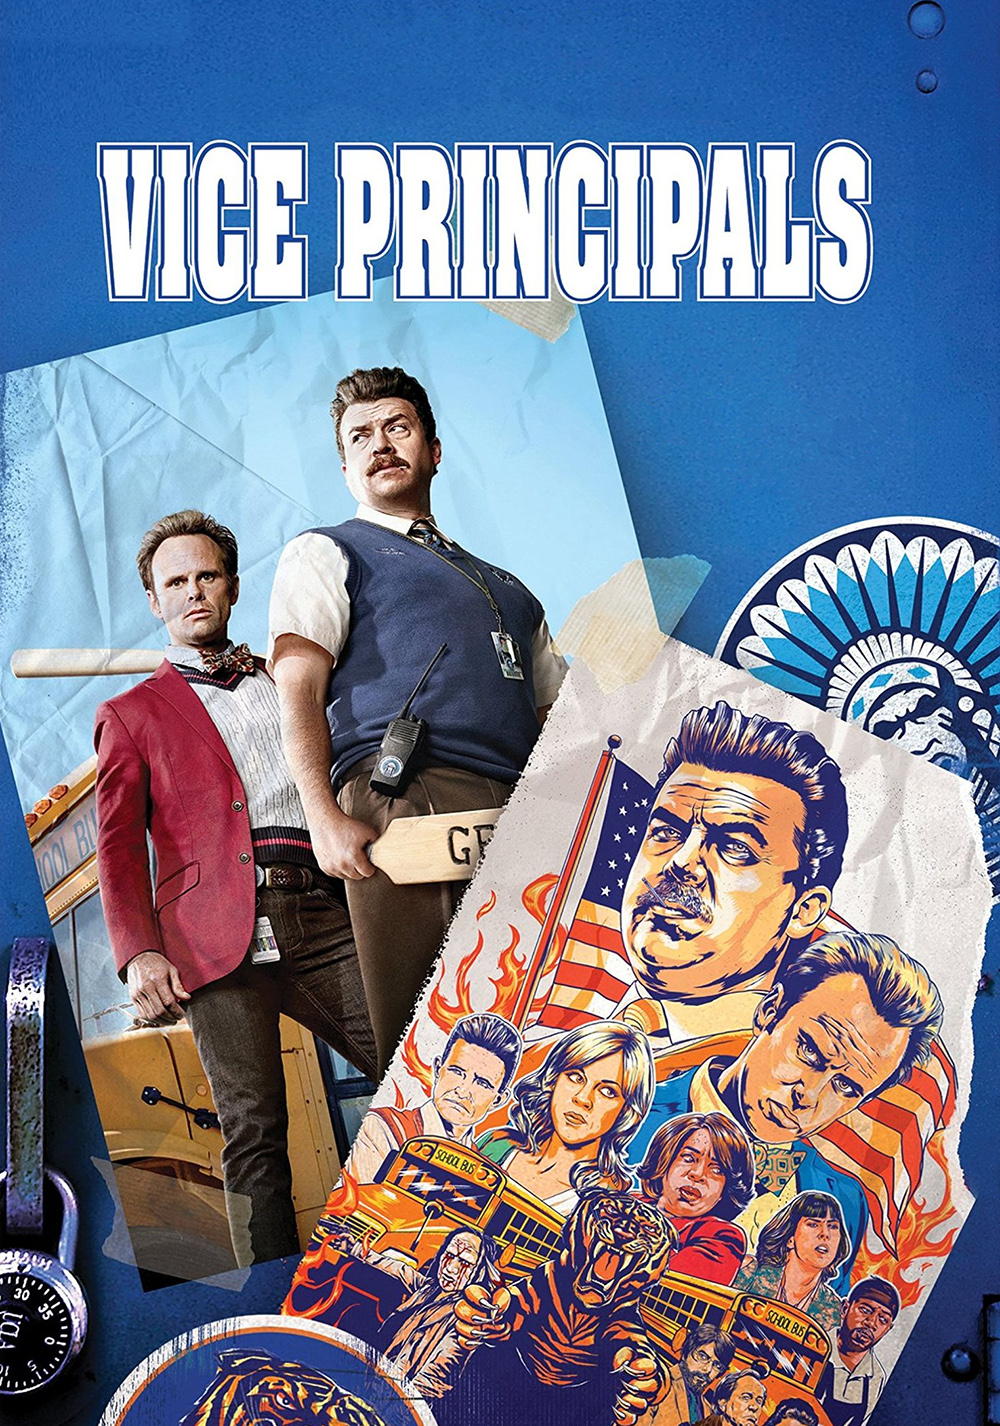 Vice Principals Wallpapers